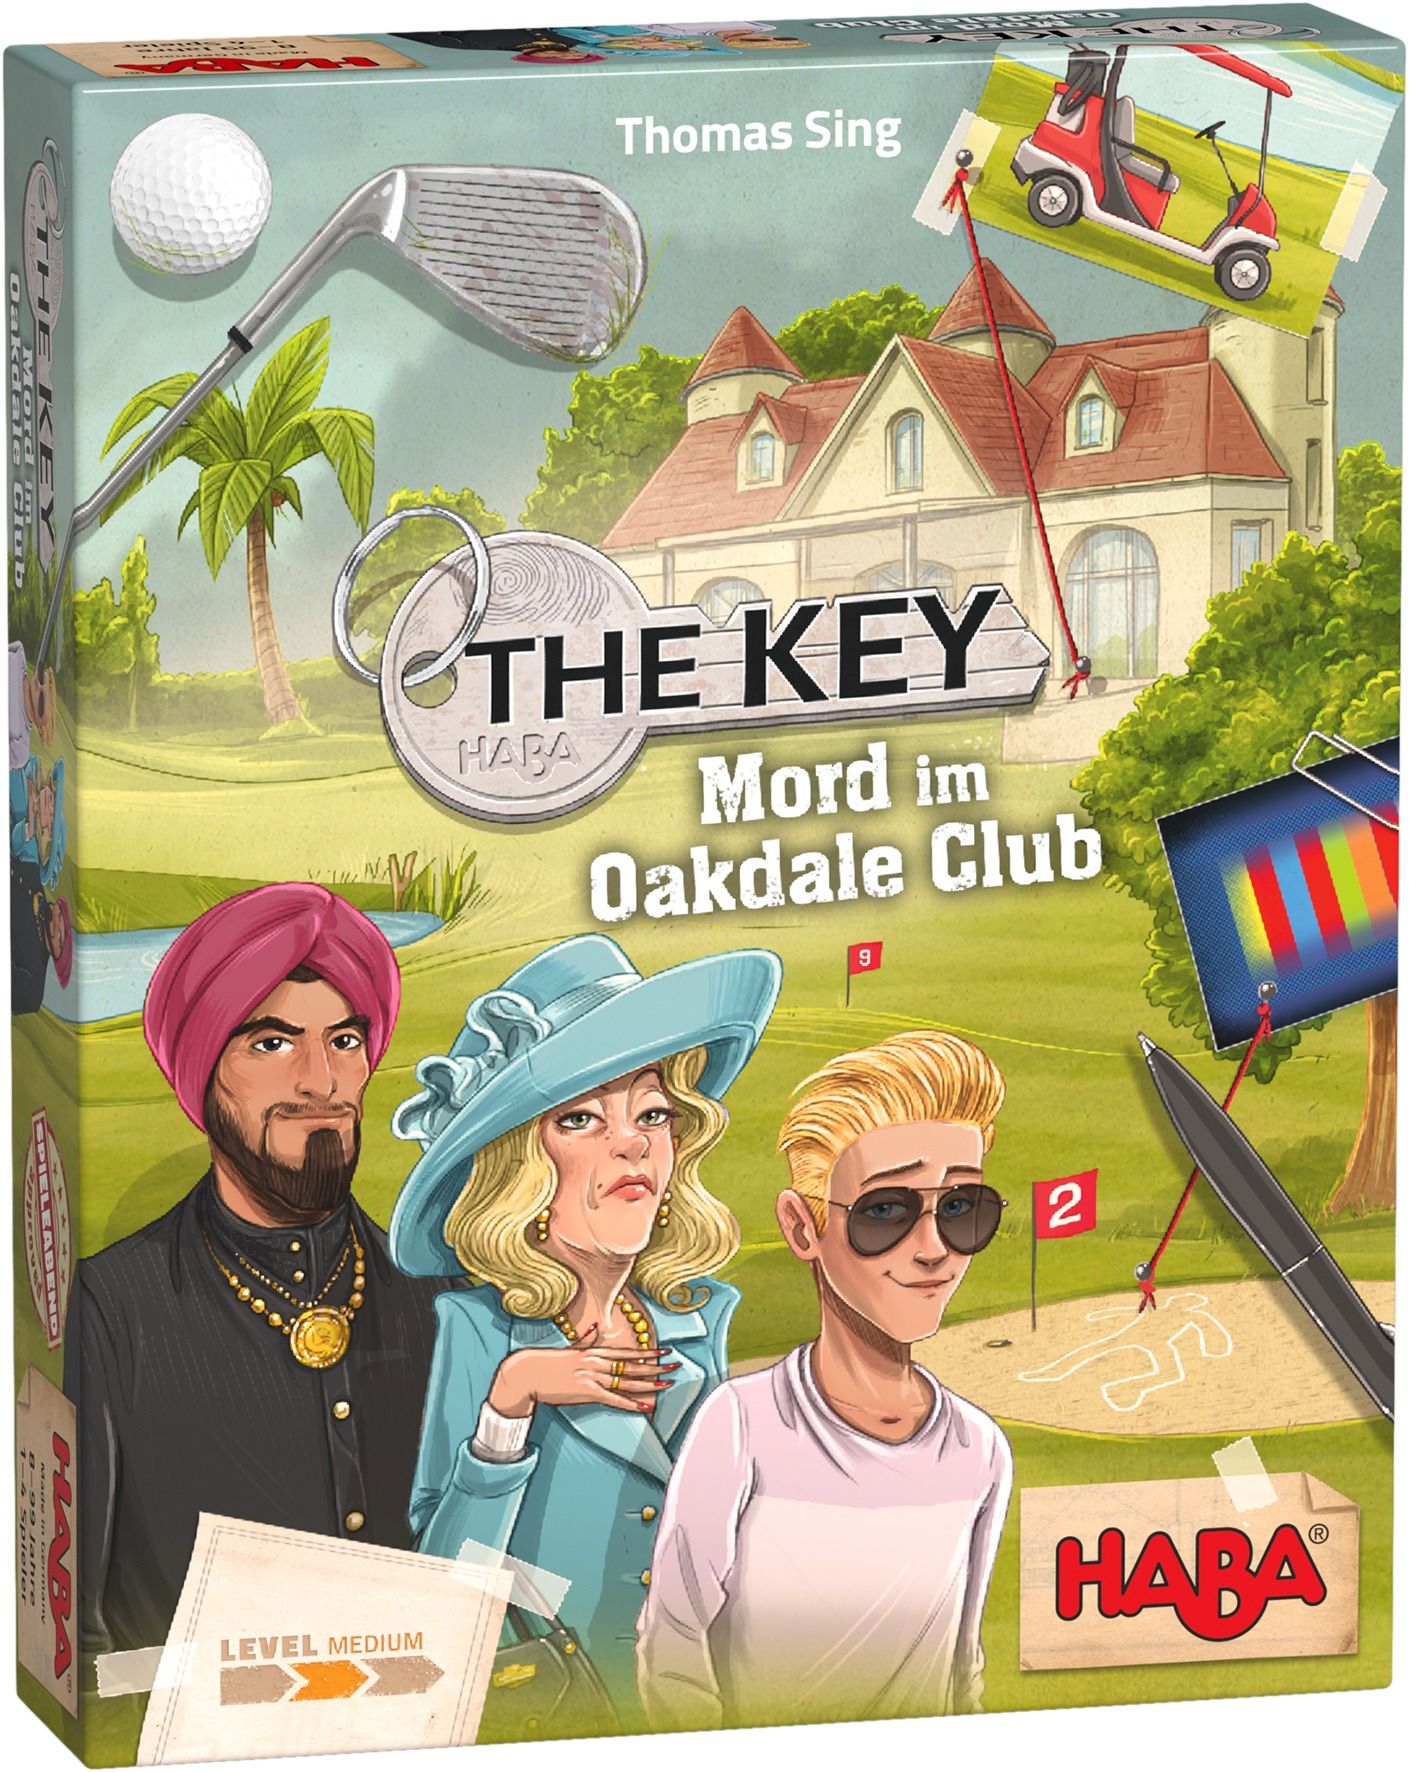 The Key - Mord im Oakdale Club von Haba